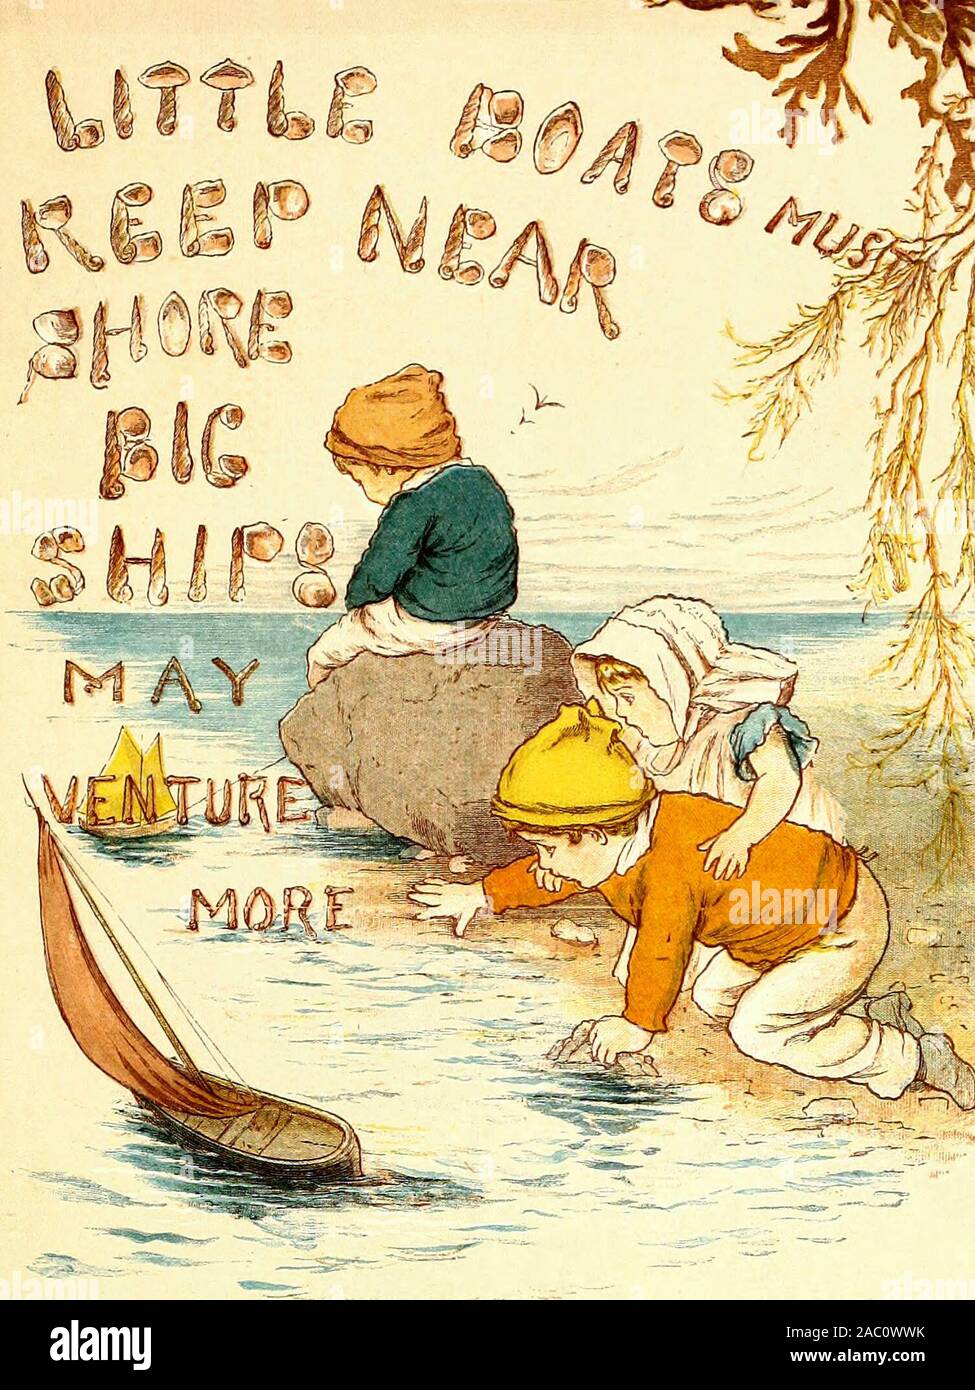 Kleine Boote müssen in der Nähe der Ufer halten, Große Schiffe können mehr Risikokapital - ein Vintage Abbildung: Ein altes Sprichwort Stockfoto